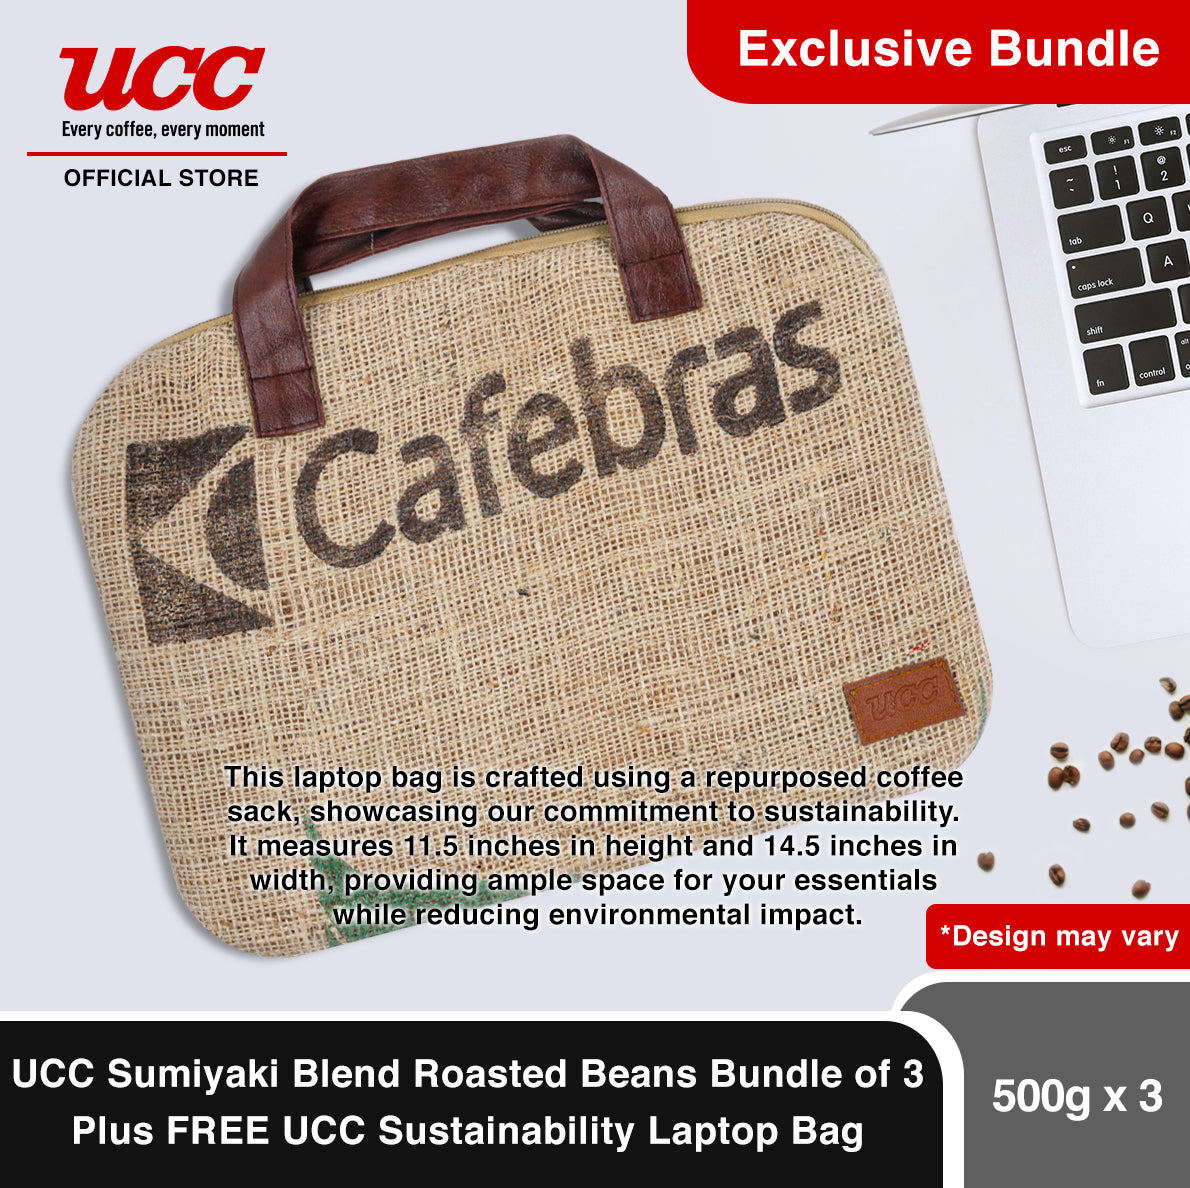 UCC Sumiyaki Roasted Beans 500g Bundle of 3 Plus FREE UCC Sustainability Laptop Bag